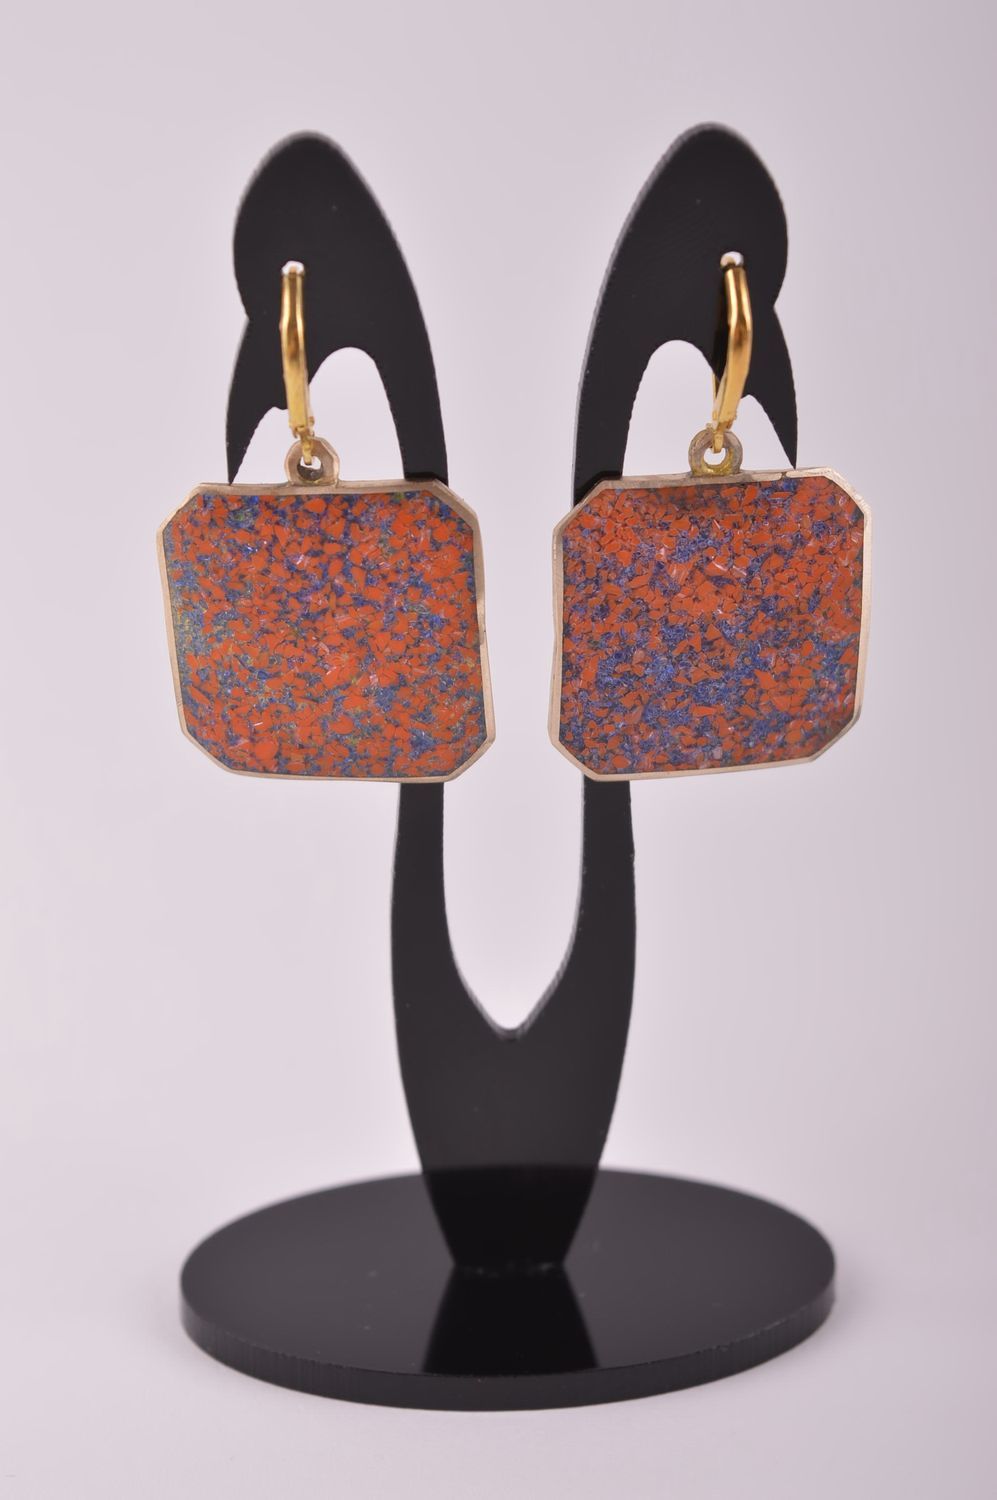 Украшение из латуни handmade серьги из натуральных камней модные серьги стильные фото 2